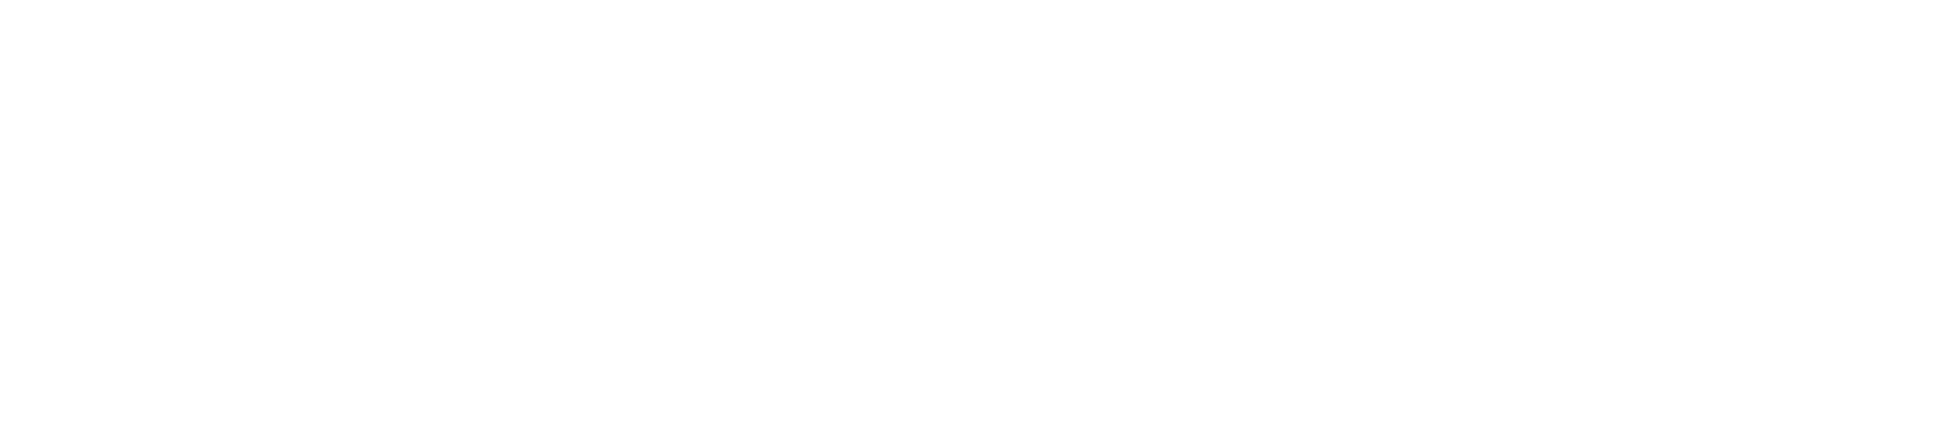 Treat codes - logo